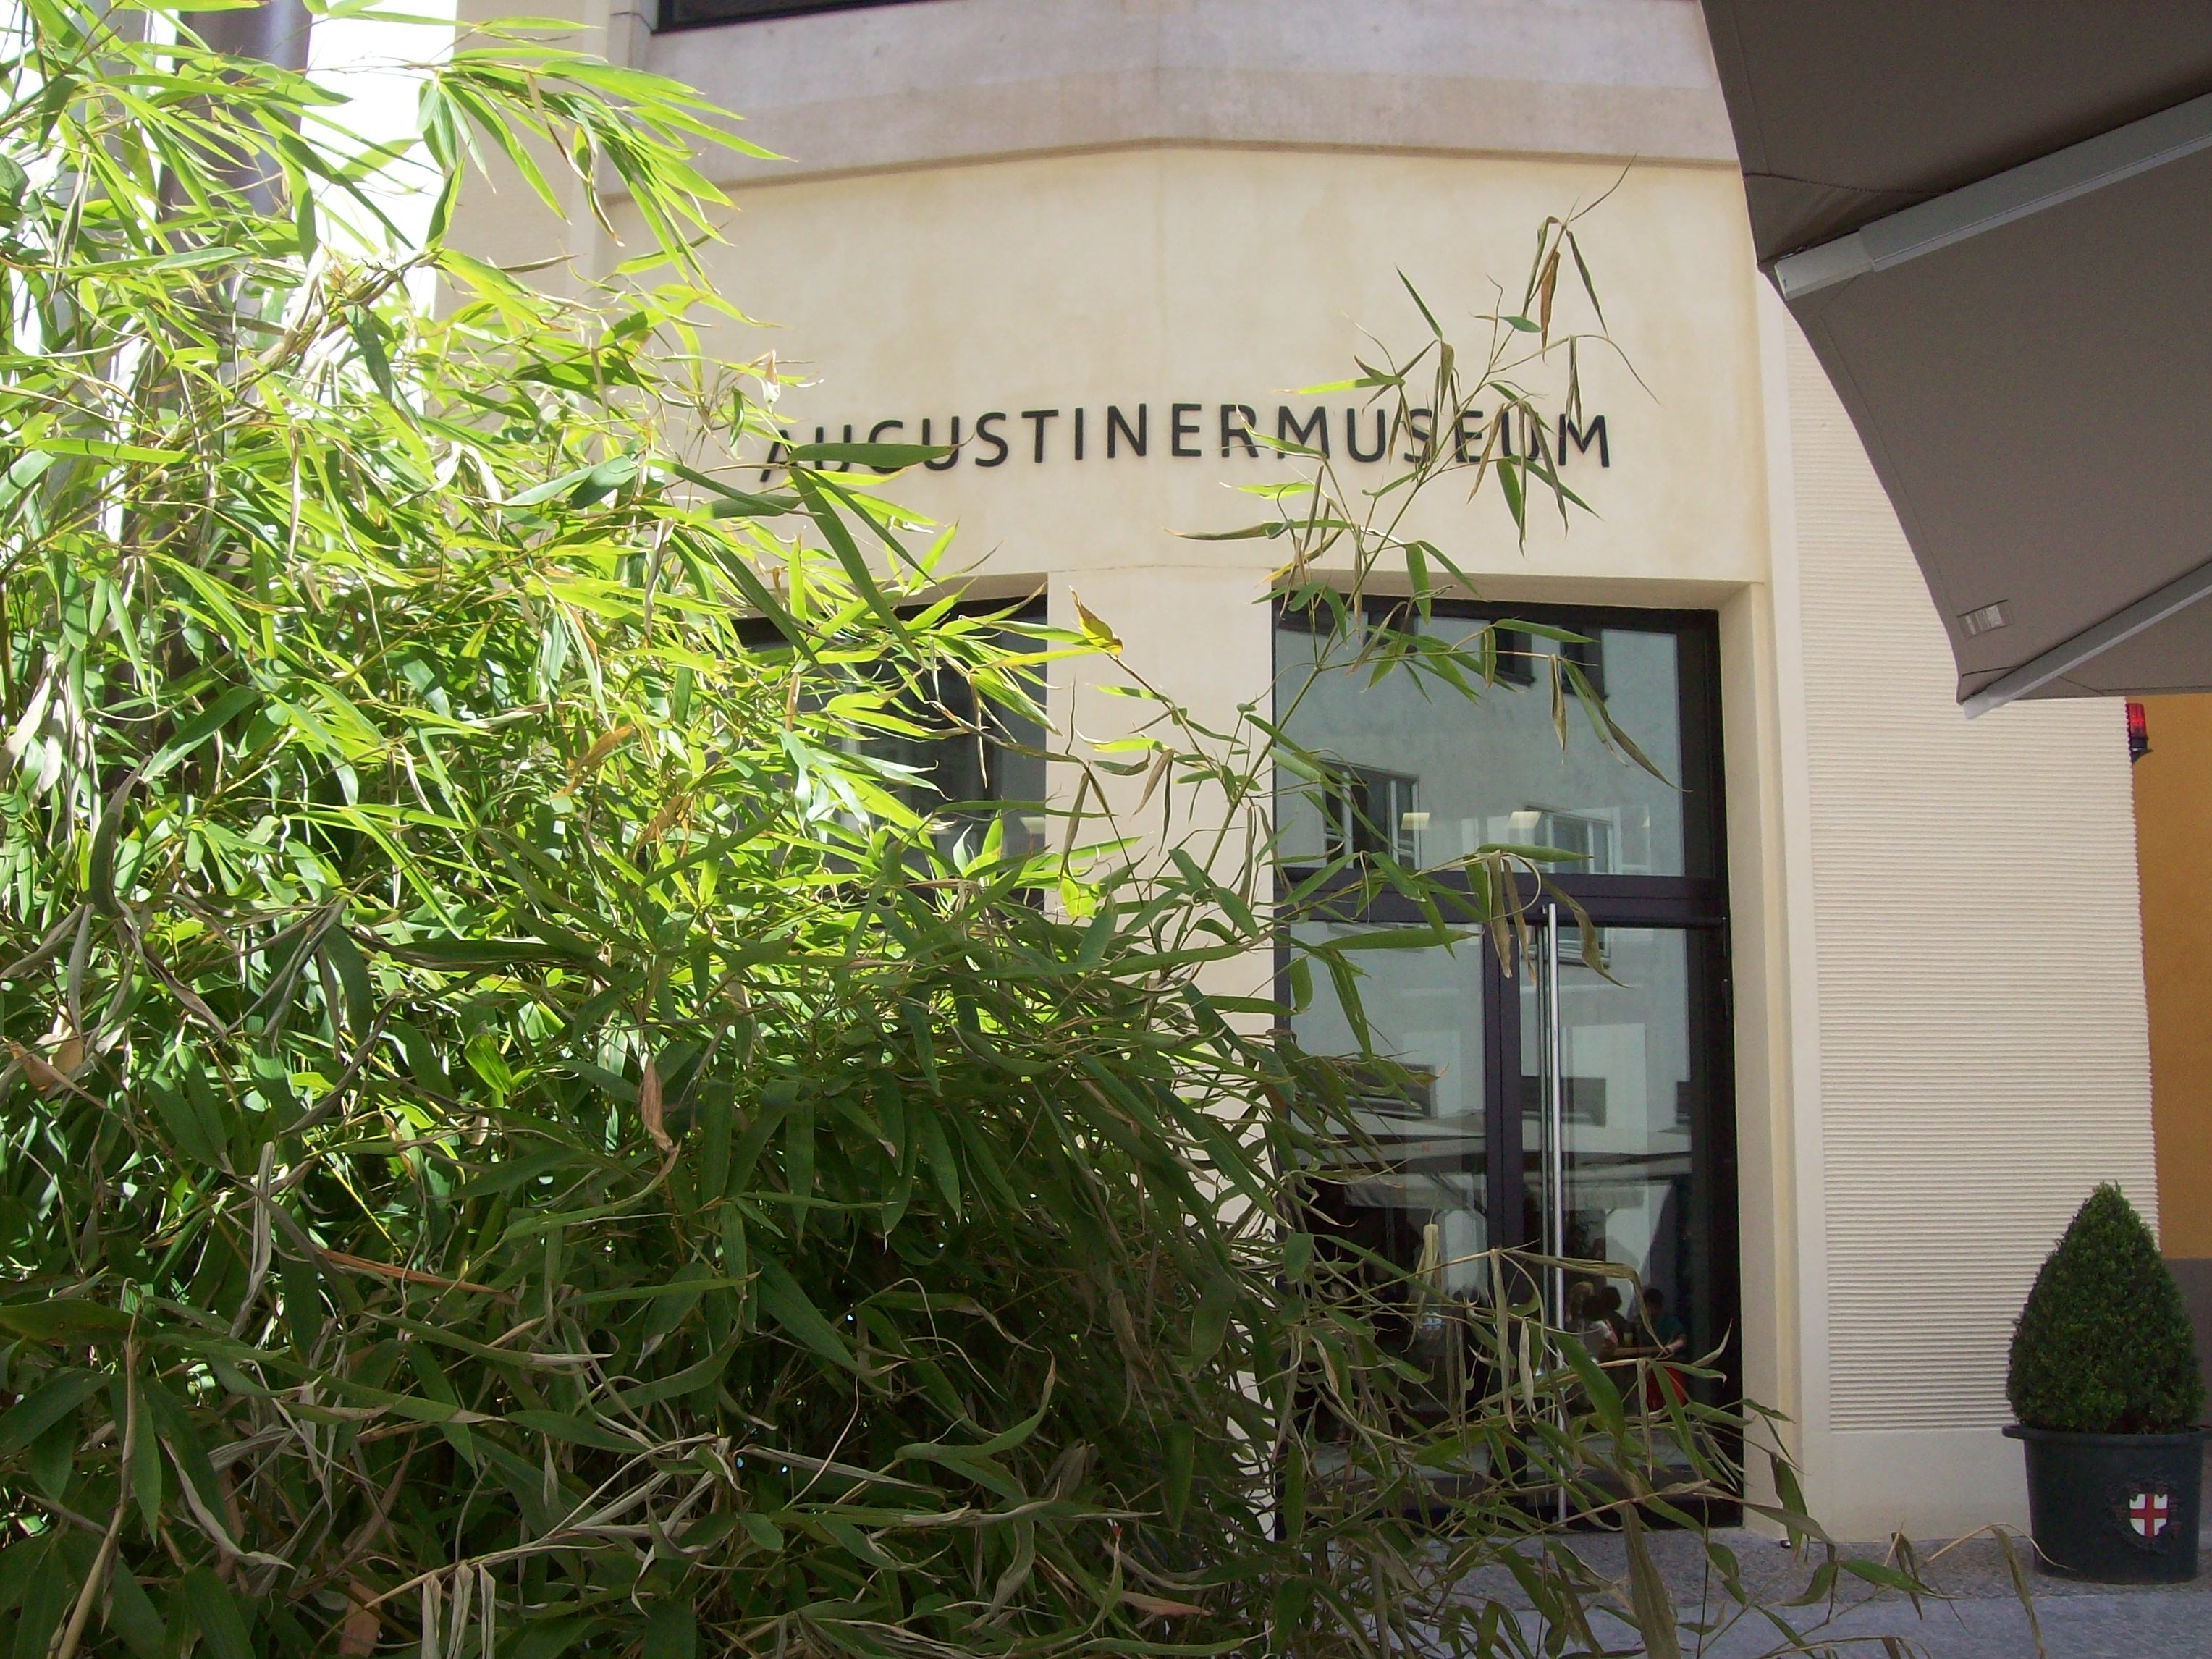 Bild 2 Augustinermuseum in Freiburg